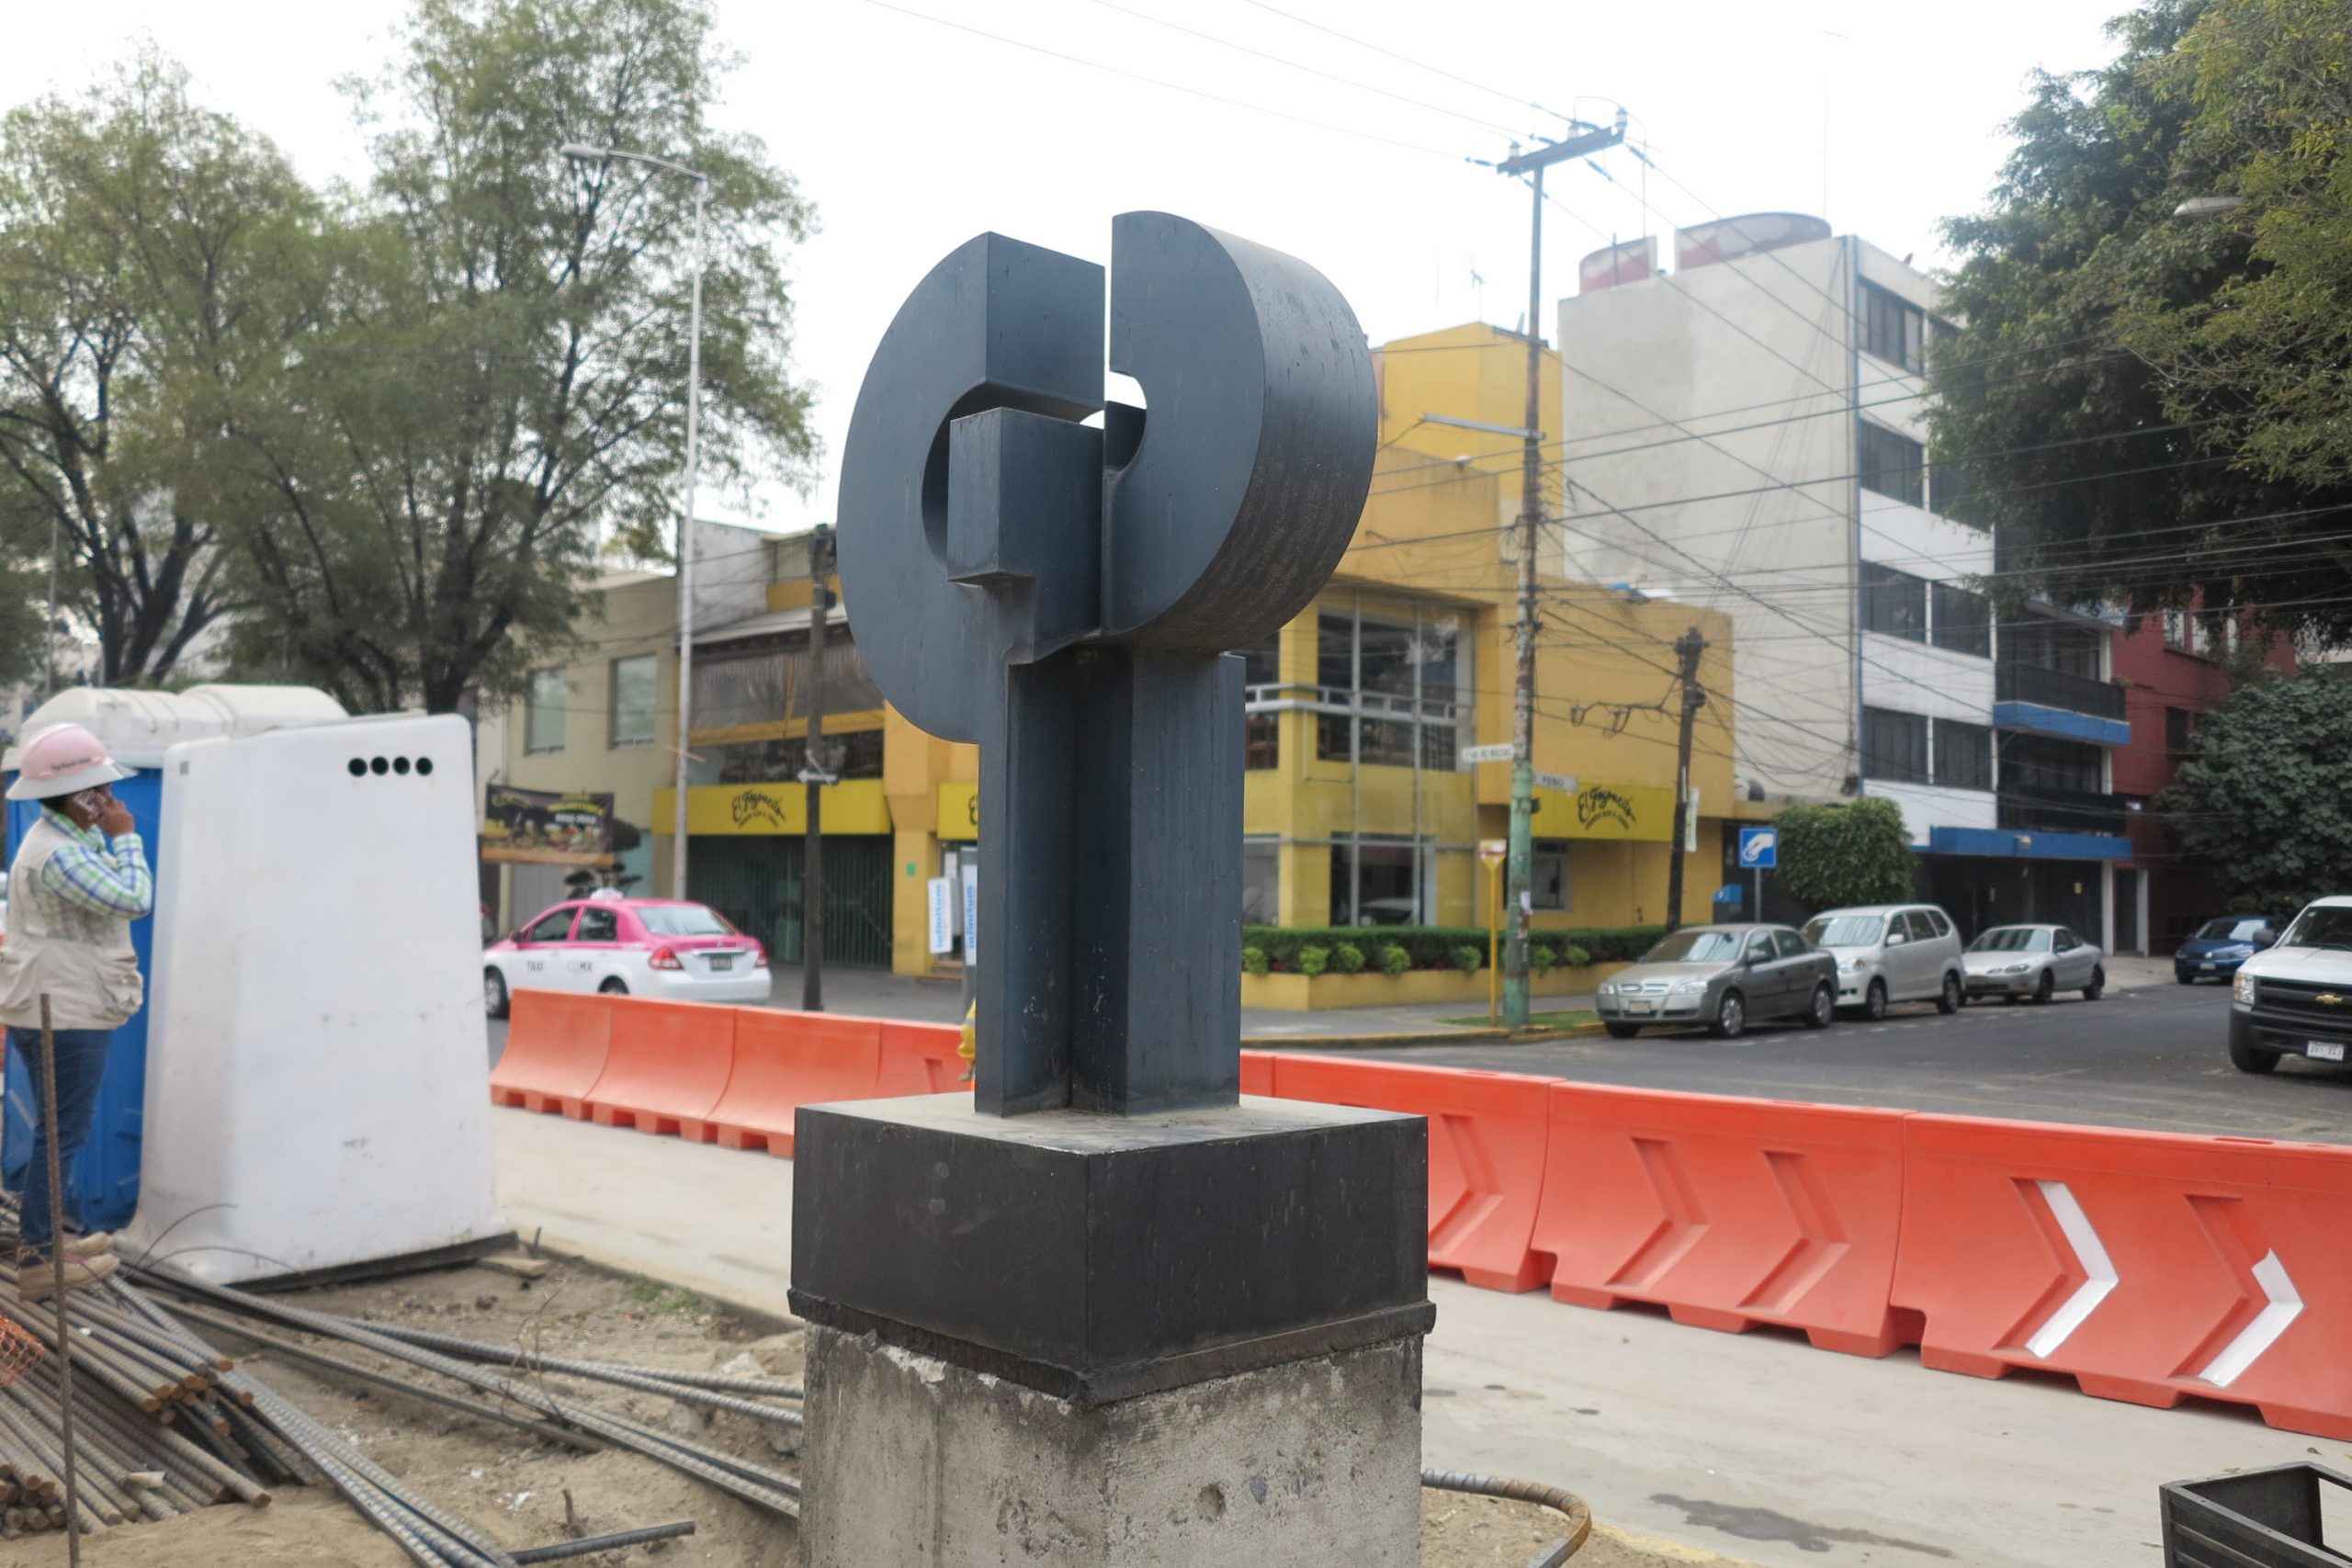 Retirarán esculturas de Sebastián del camellón de Río Mixcoac - Esculturas Mixcoac 01 scaled